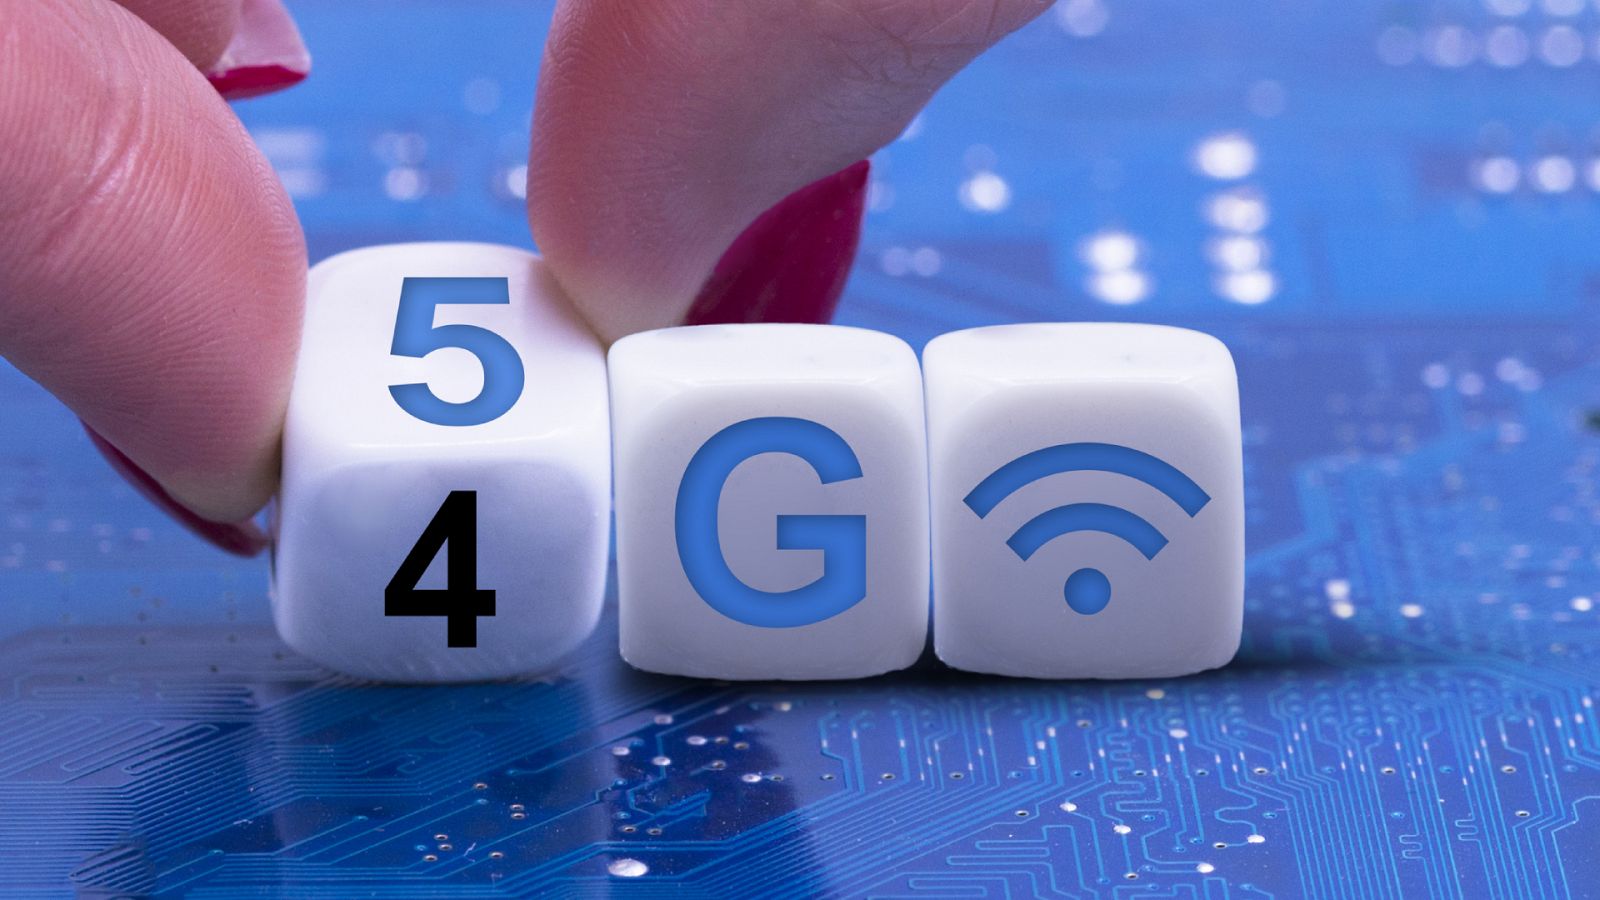 5G: Es la quinta generación de tecnologías de telefonía móvil